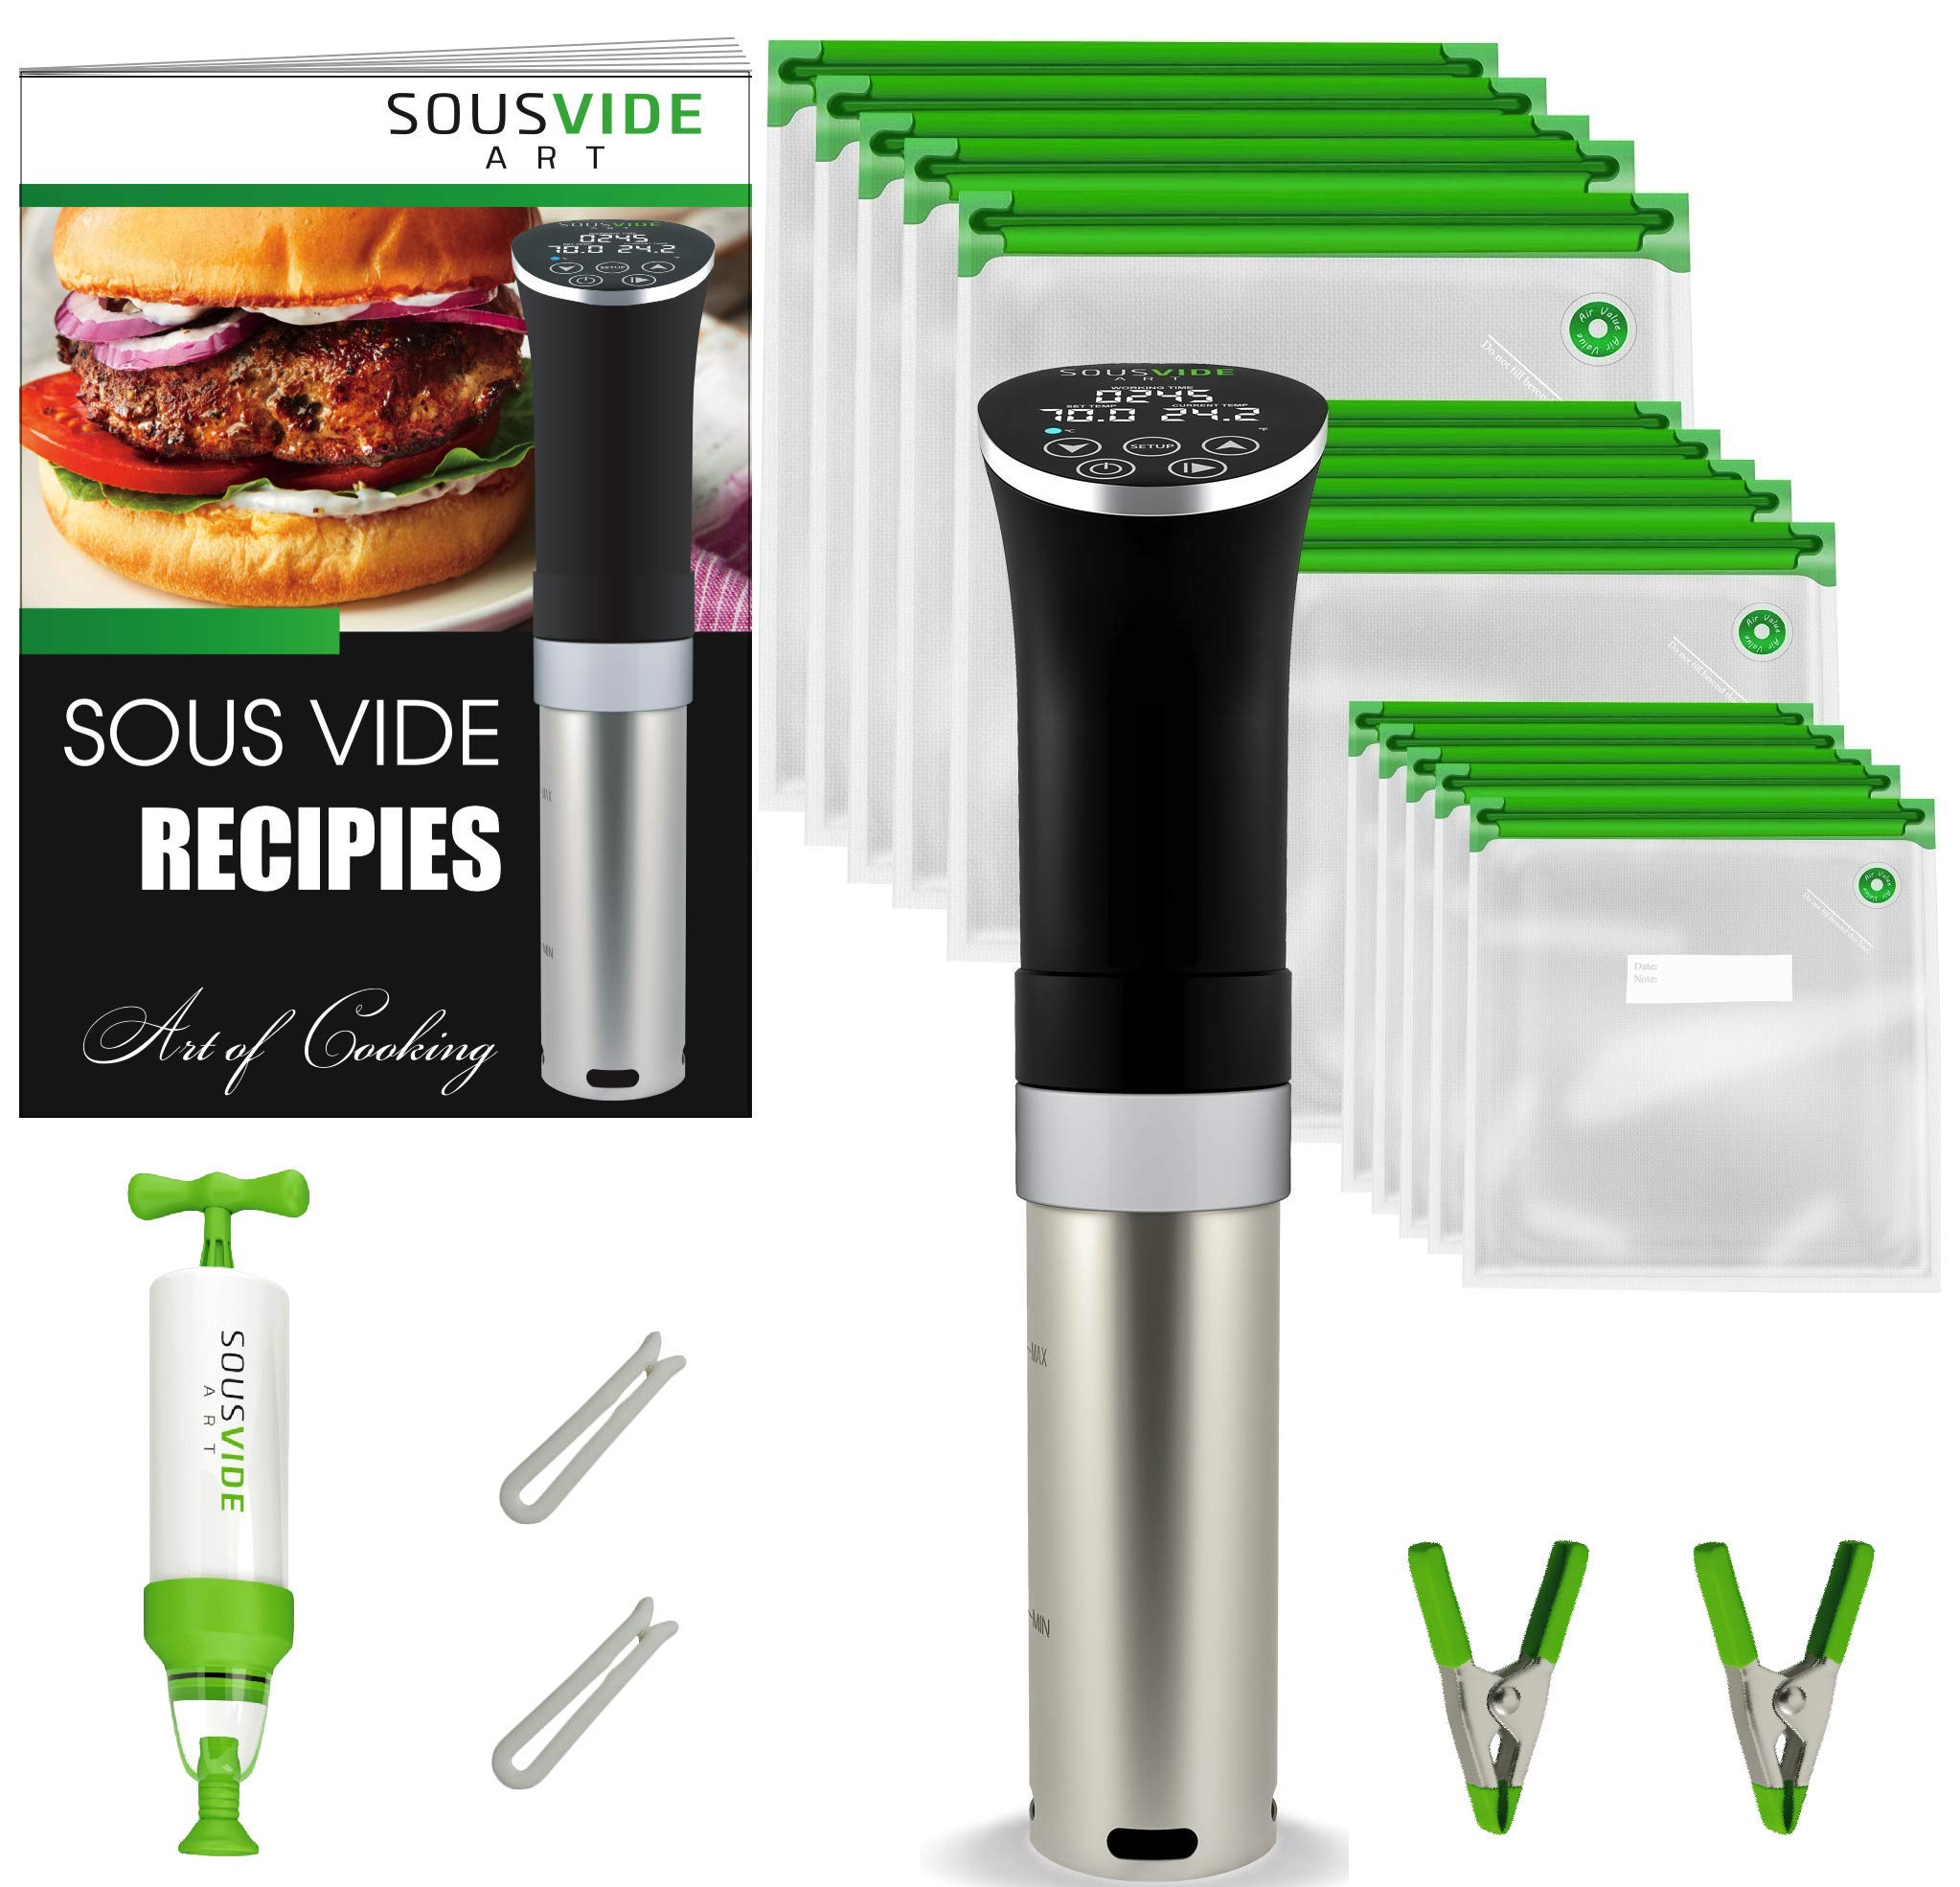 SOUSVIDE ART Cooker Kit